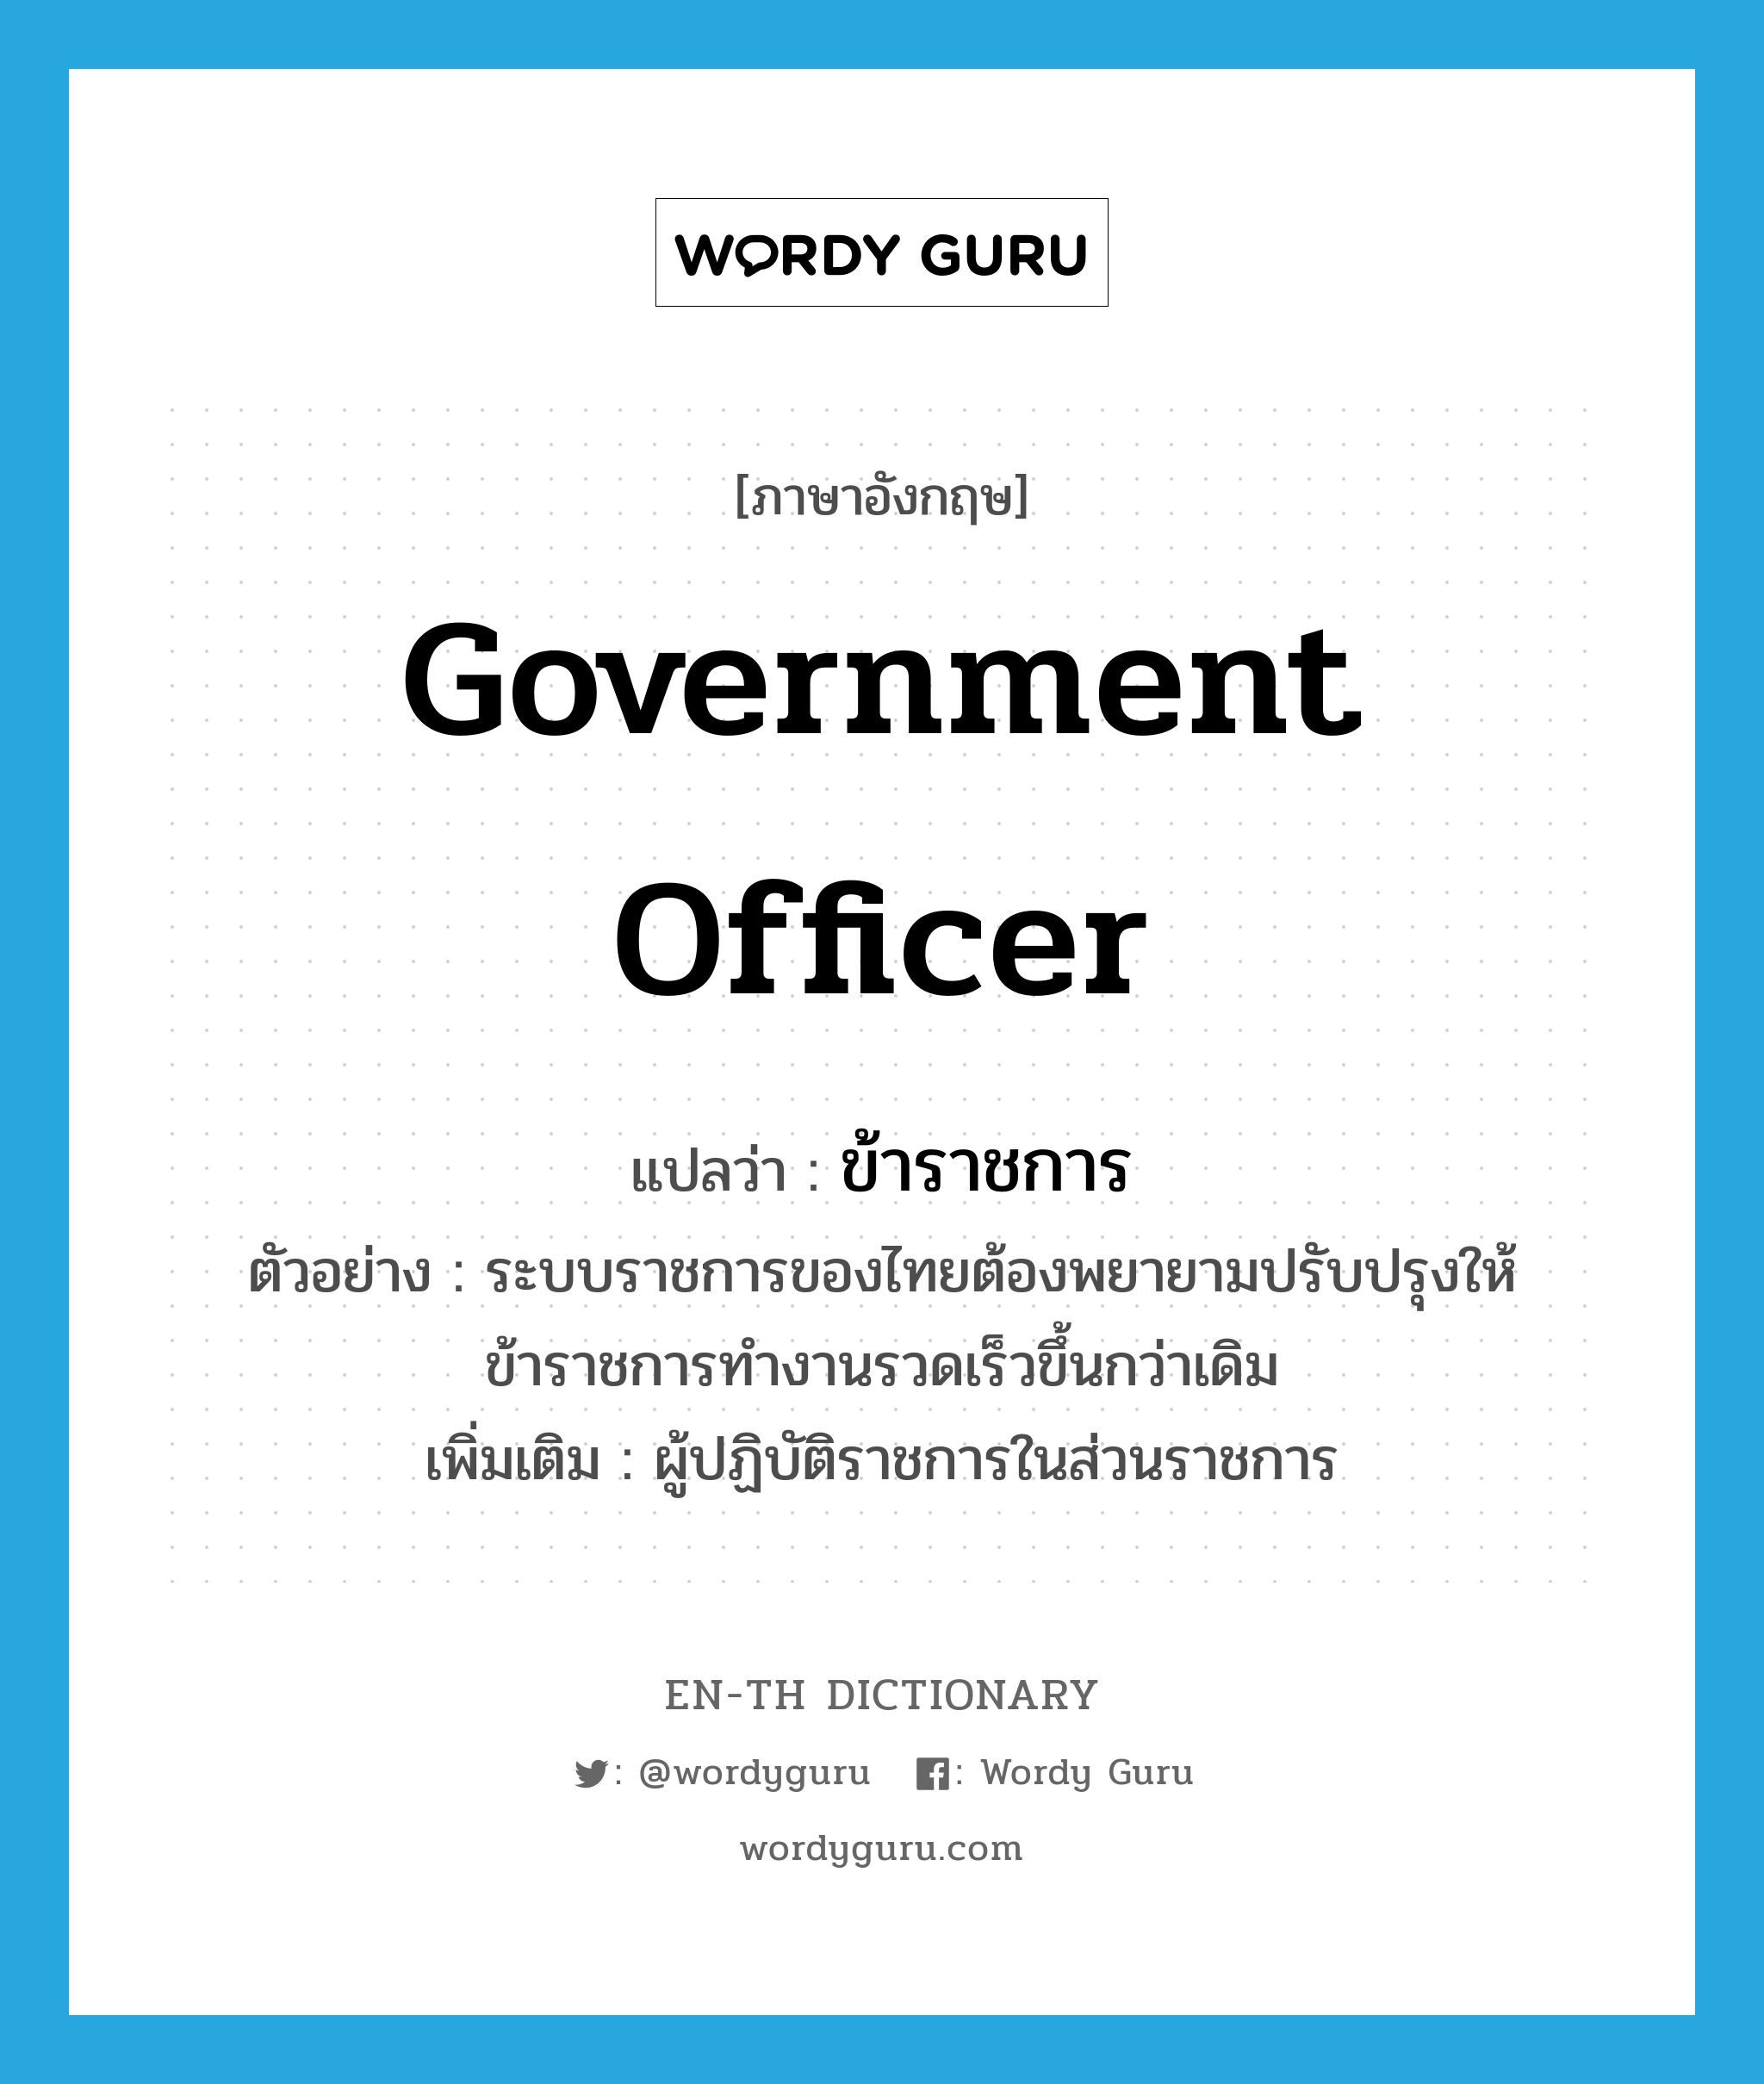 government officer แปลว่า?, คำศัพท์ภาษาอังกฤษ government officer แปลว่า ข้าราชการ ประเภท N ตัวอย่าง ระบบราชการของไทยต้องพยายามปรับปรุงให้ข้าราชการทำงานรวดเร็วขึ้นกว่าเดิม เพิ่มเติม ผู้ปฏิบัติราชการในส่วนราชการ หมวด N